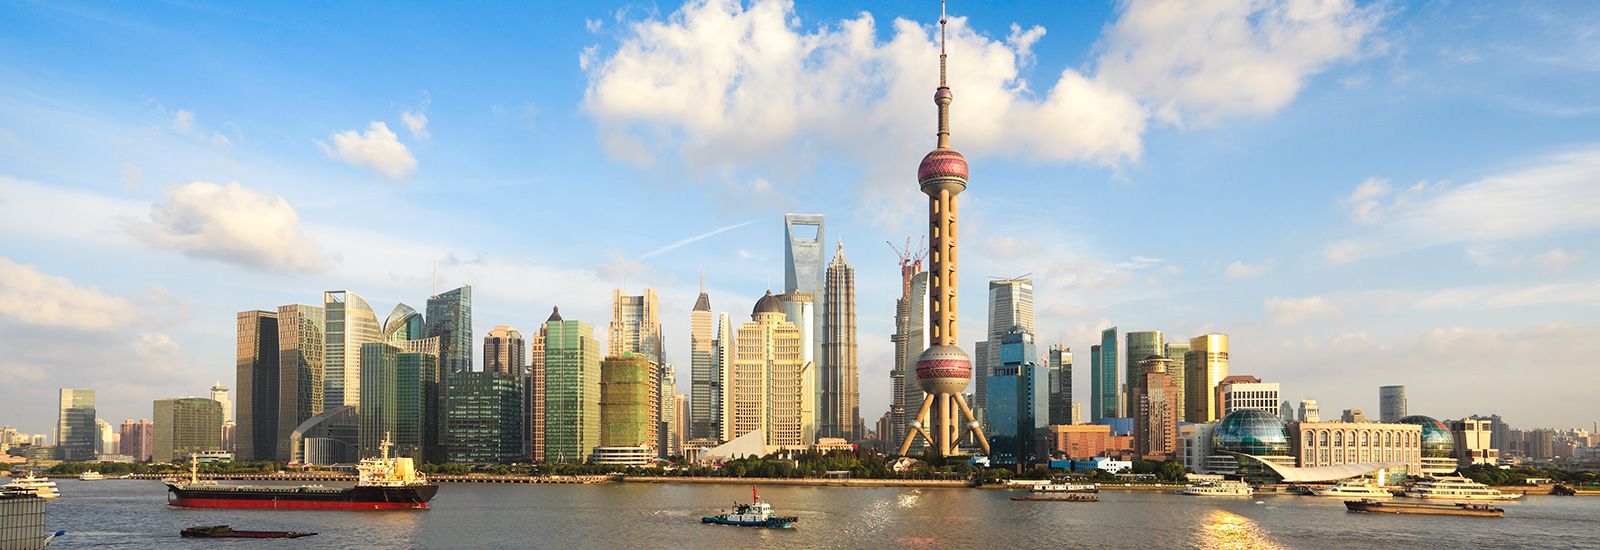 The Shanghai skyline